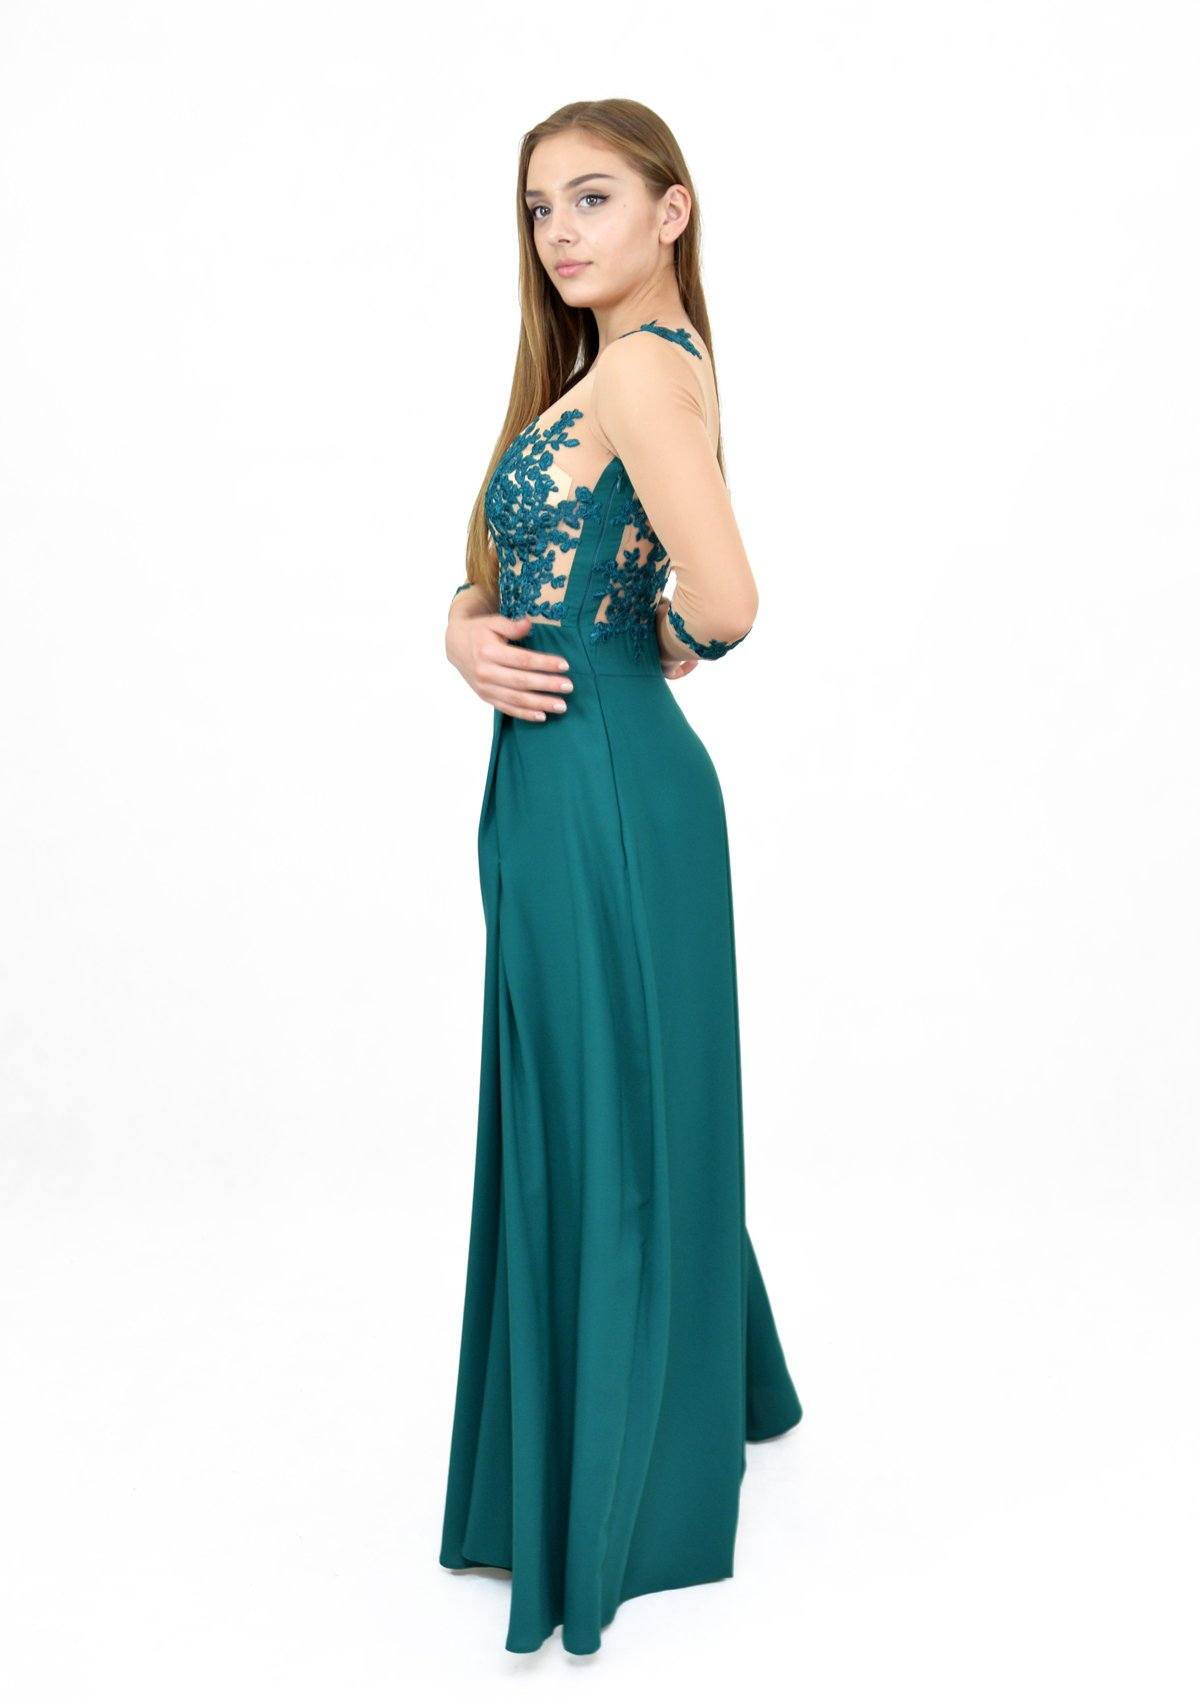 Rochie cusută manual cu mâneci din plasă, verde turcoaz Rochie R80106 